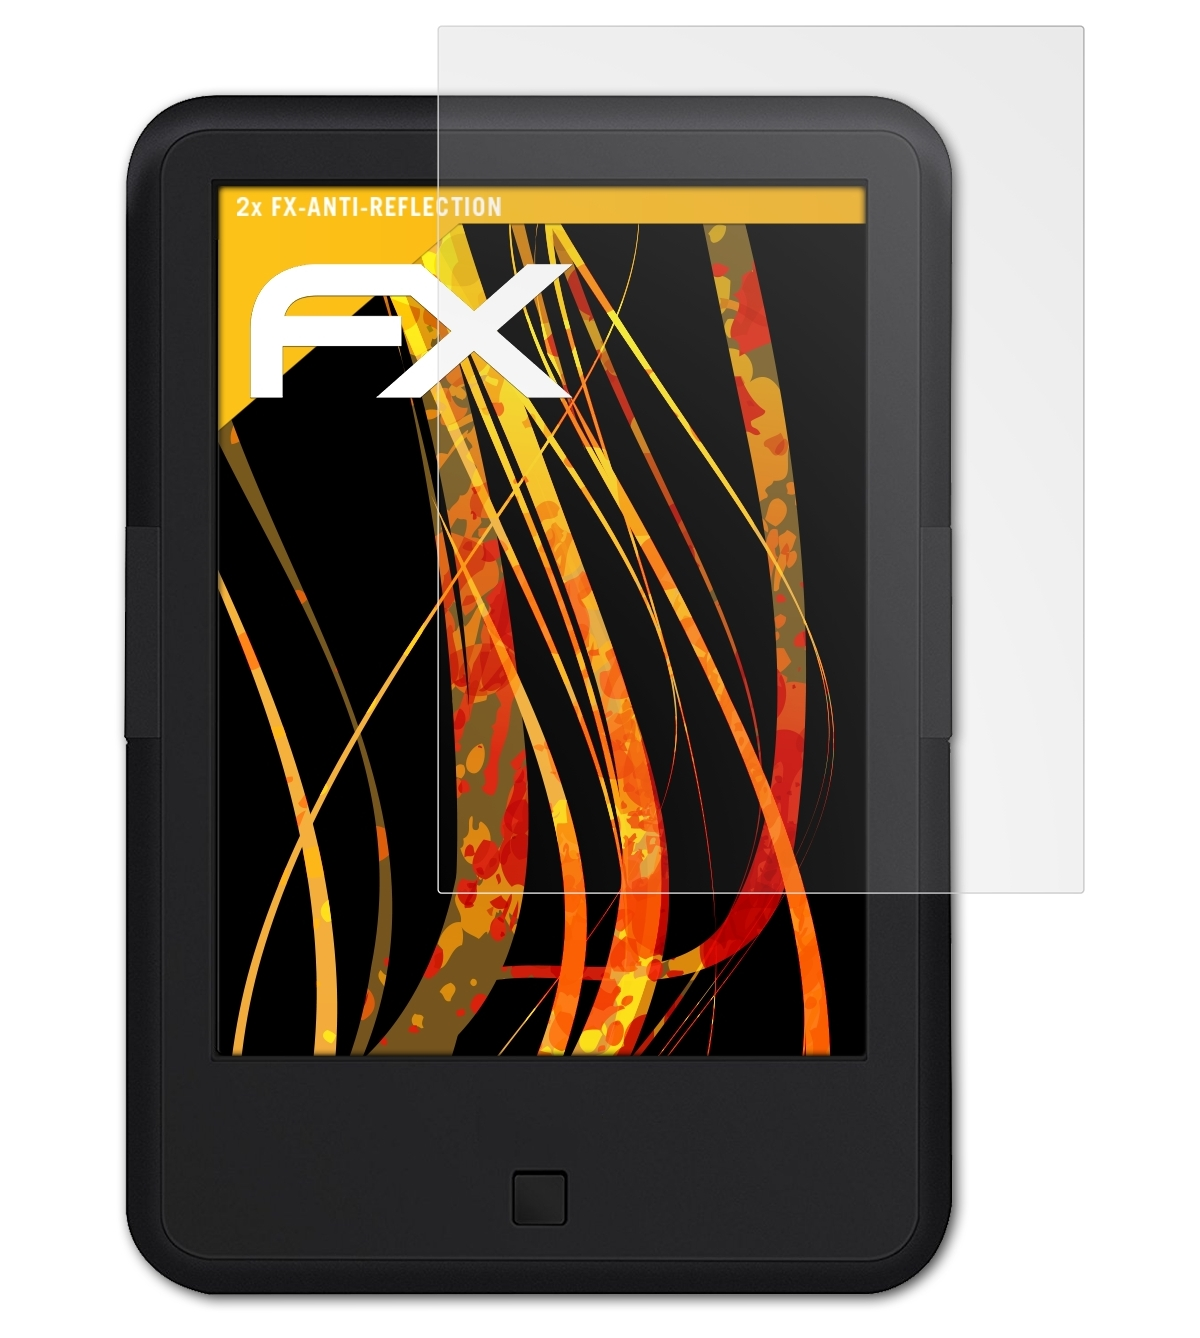 FX-Antireflex BOOX ATFOLIX C67ML) Displayschutz(für 2x